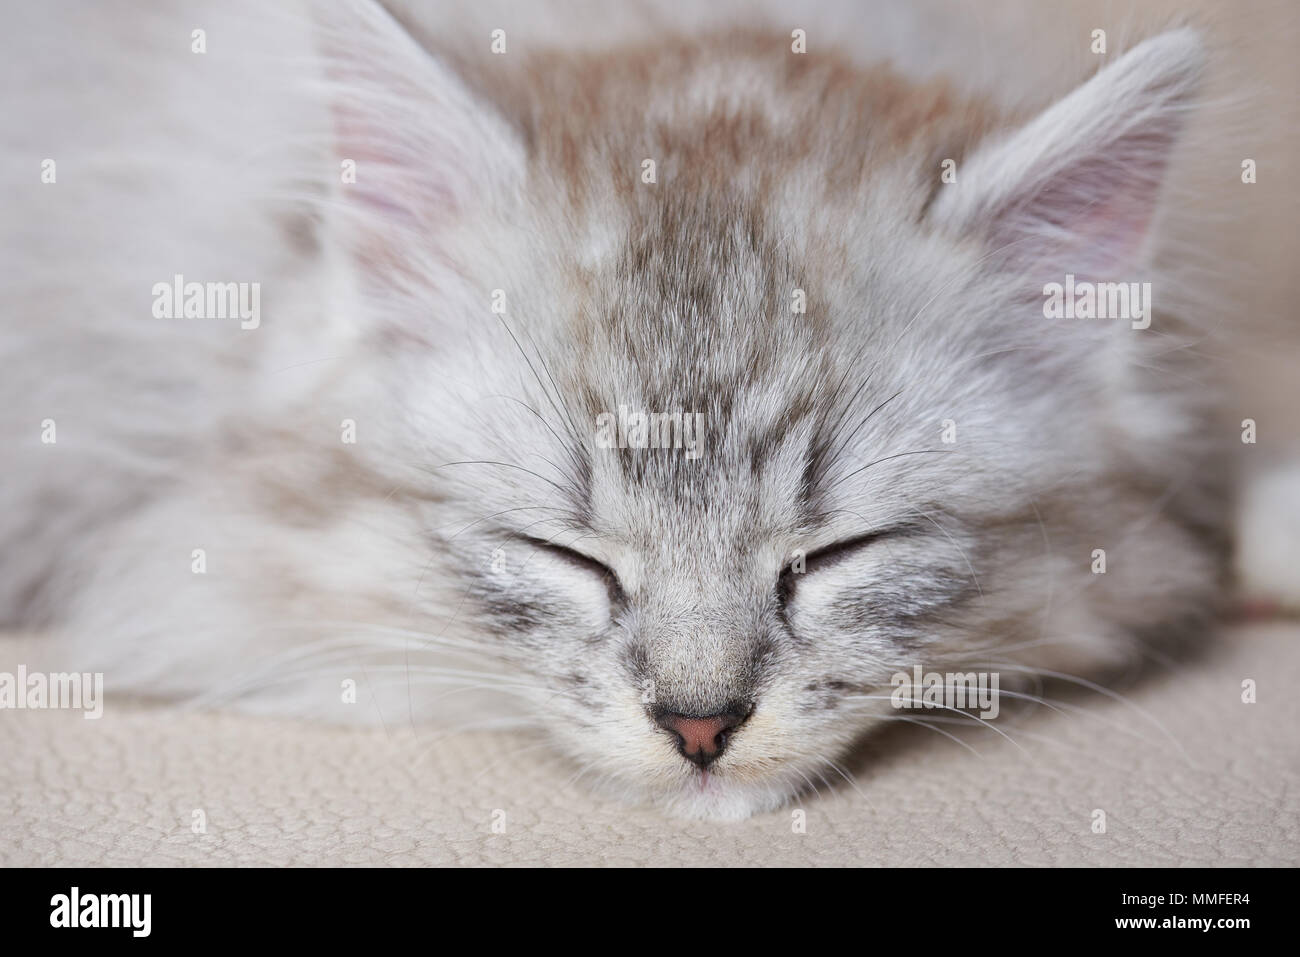 Ritratto di sleeping kitty su brown soda. Colore grigio cat dormire sul lettino Foto Stock